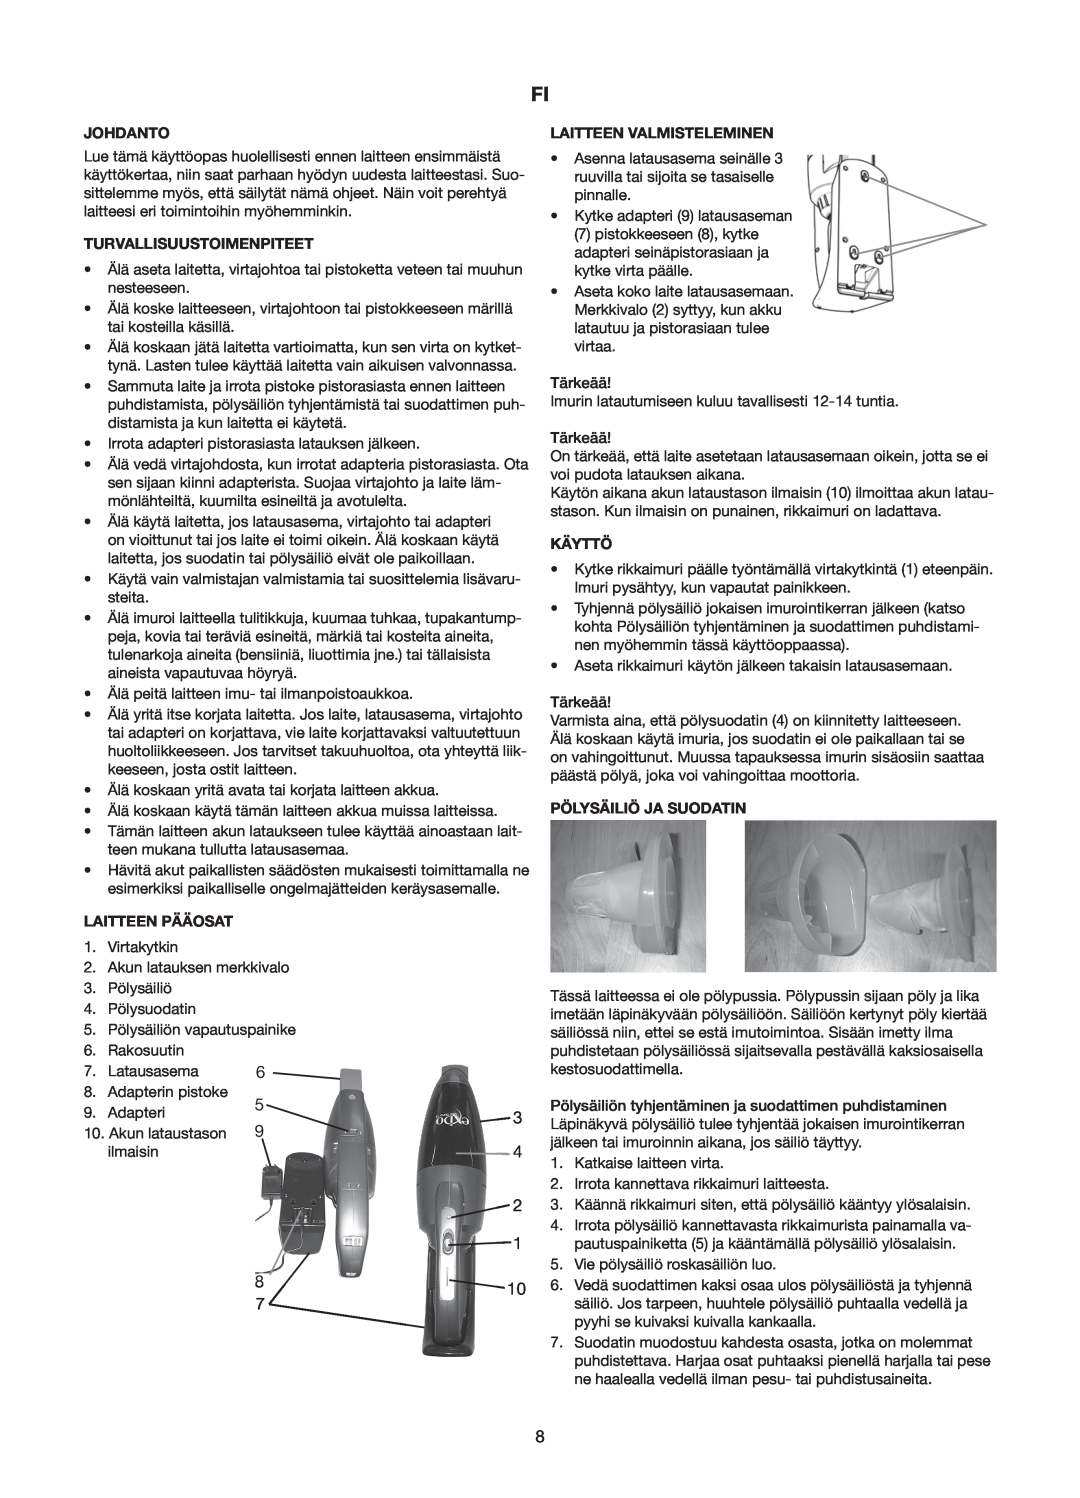 Melissa 240-112/113 manual Johdanto, Turvallisuustoimenpiteet, Laitteen Pääosat 